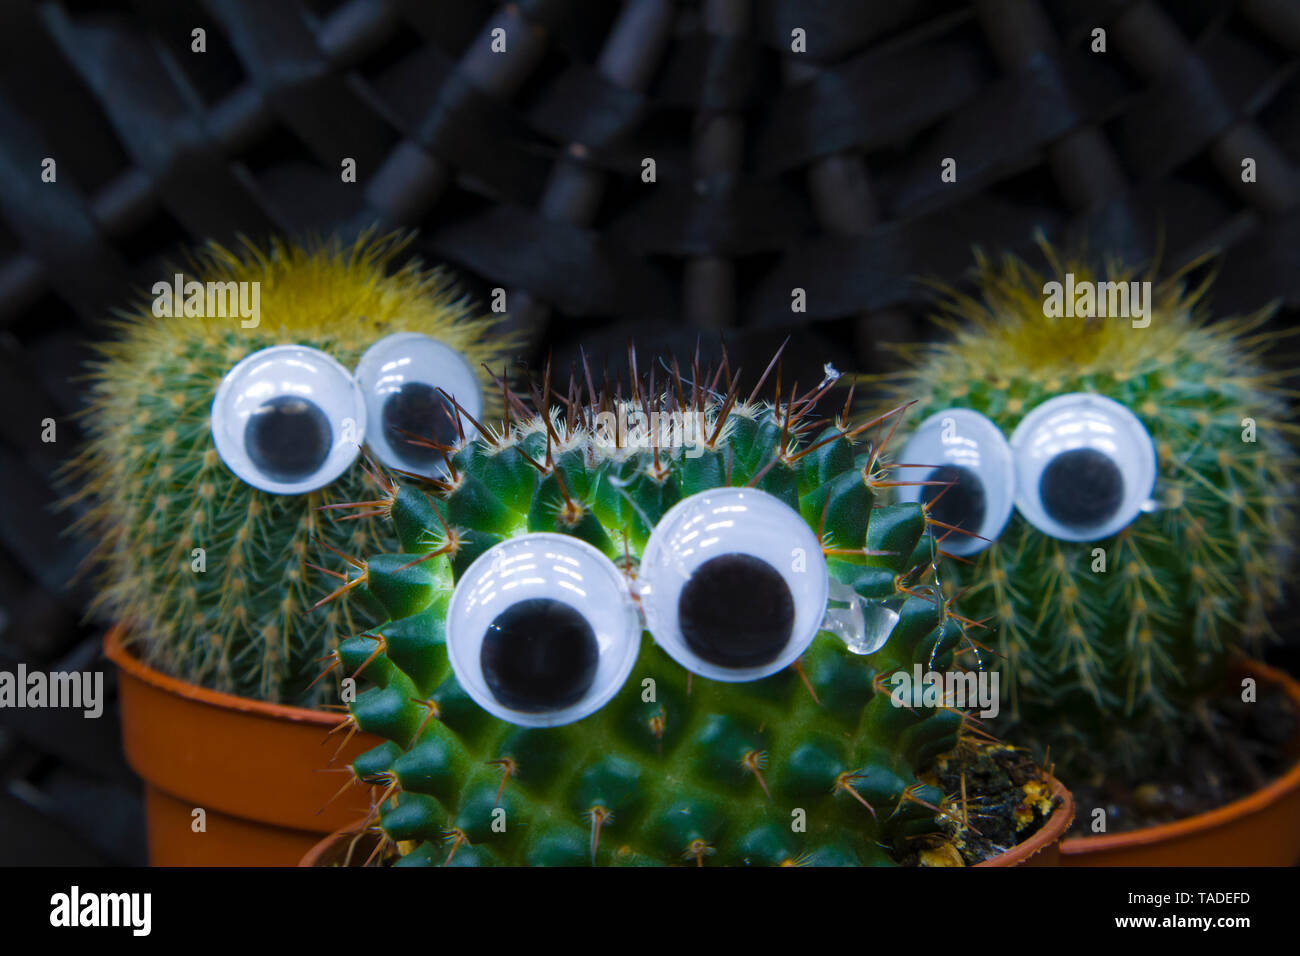 Cactus drôle de famille, trois petits cactus succulentes avec des yeux en plastique dans un pot Banque D'Images